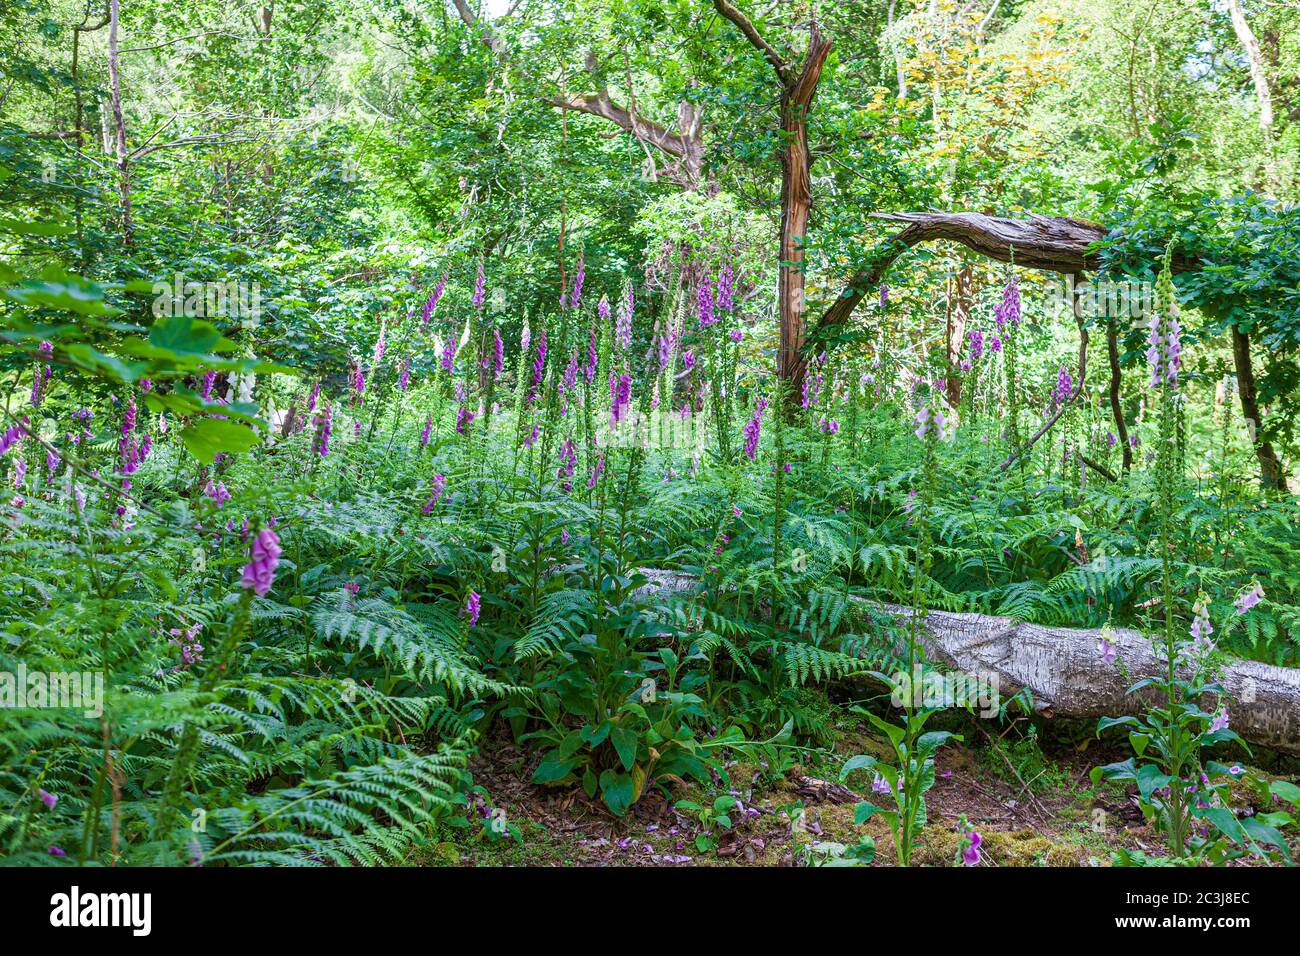 rellenos de bosque con guantes de espuma reino unido con árbol caído temprano en verano knottishart heath norfolk Foto de stock